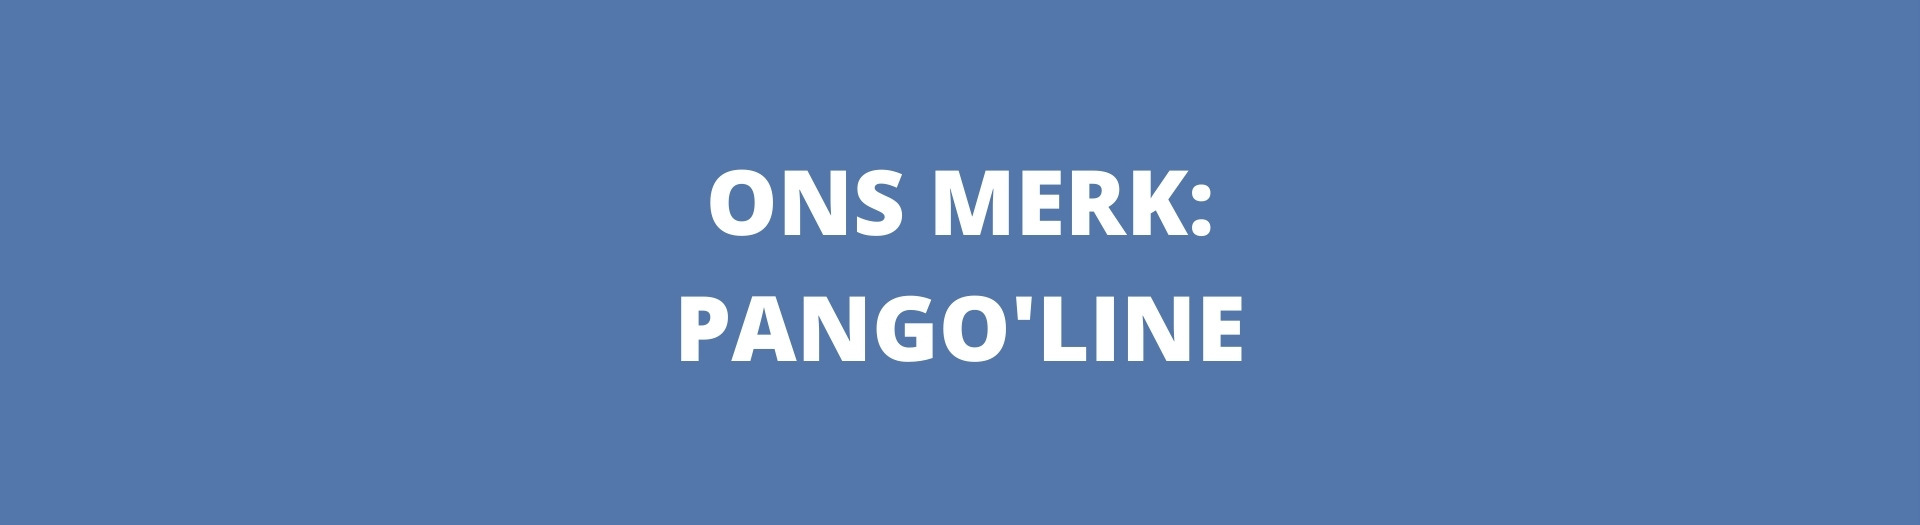 Ons merk: Pango'Line